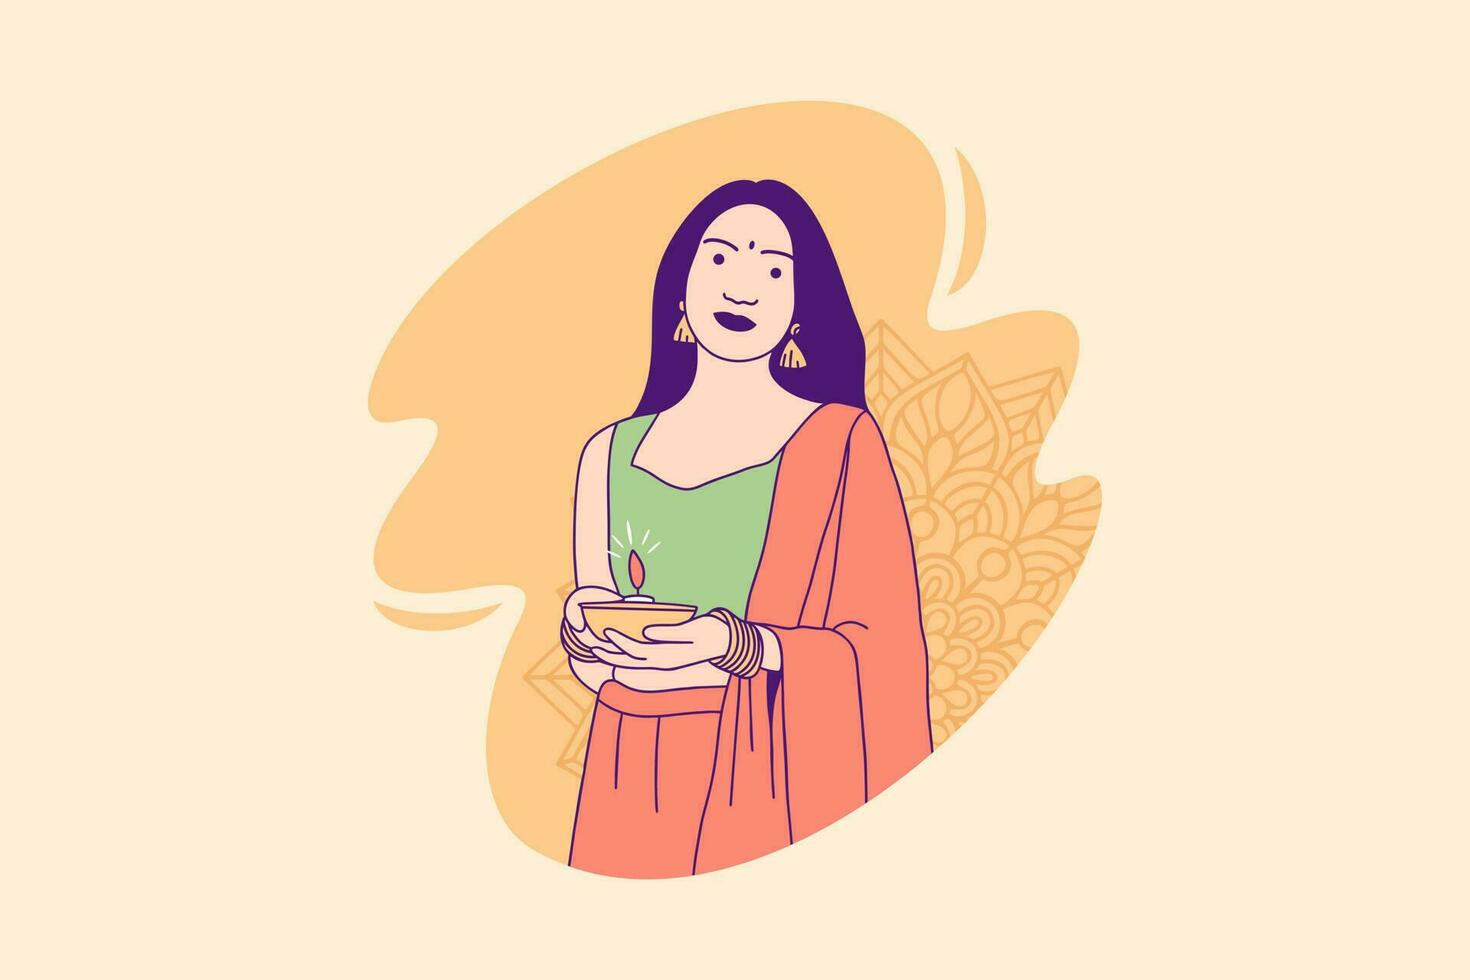 illustraties mooi Indisch vrouw Holding diya lamp voor viering diwali dag ontwerp concept vector